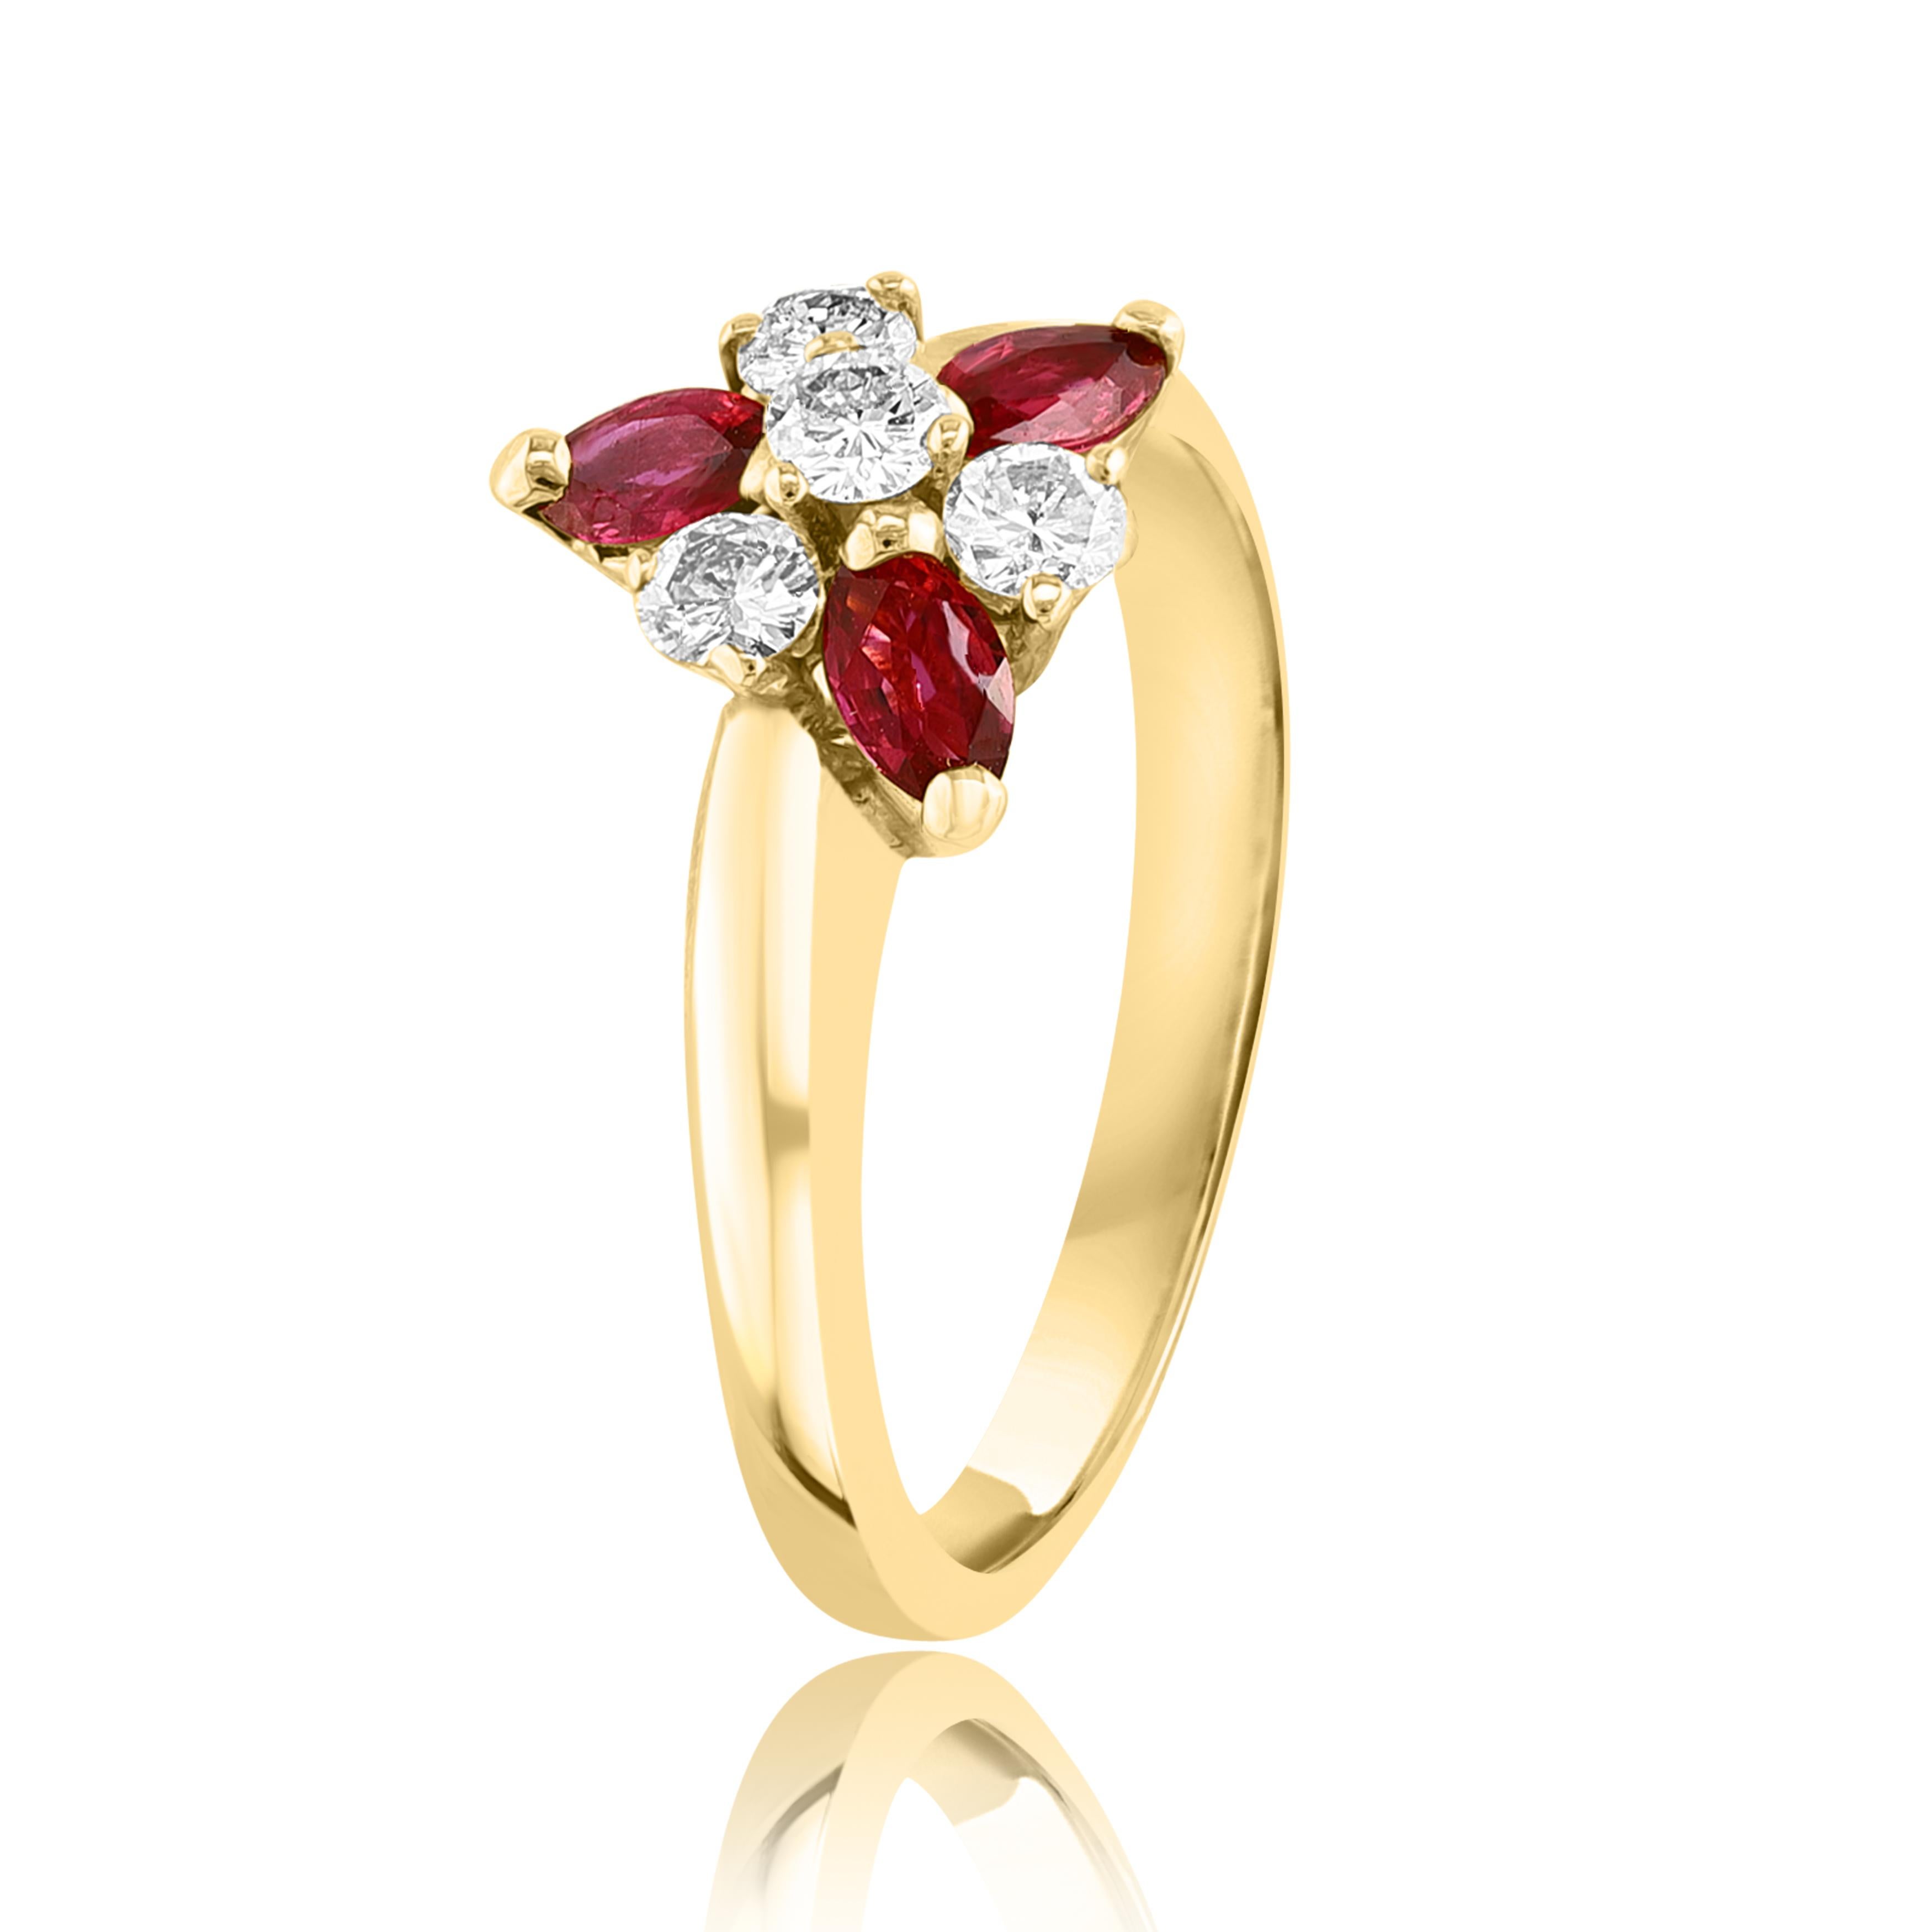 Dieser klassische Modering zeigt 3 rote Rubine in Marquiseform mit einem Gewicht von 0,36 Karat und 4 runde Diamanten mit einem Gesamtgewicht von 0,20 Karat und ist aus 14K Gelbgold gefertigt.